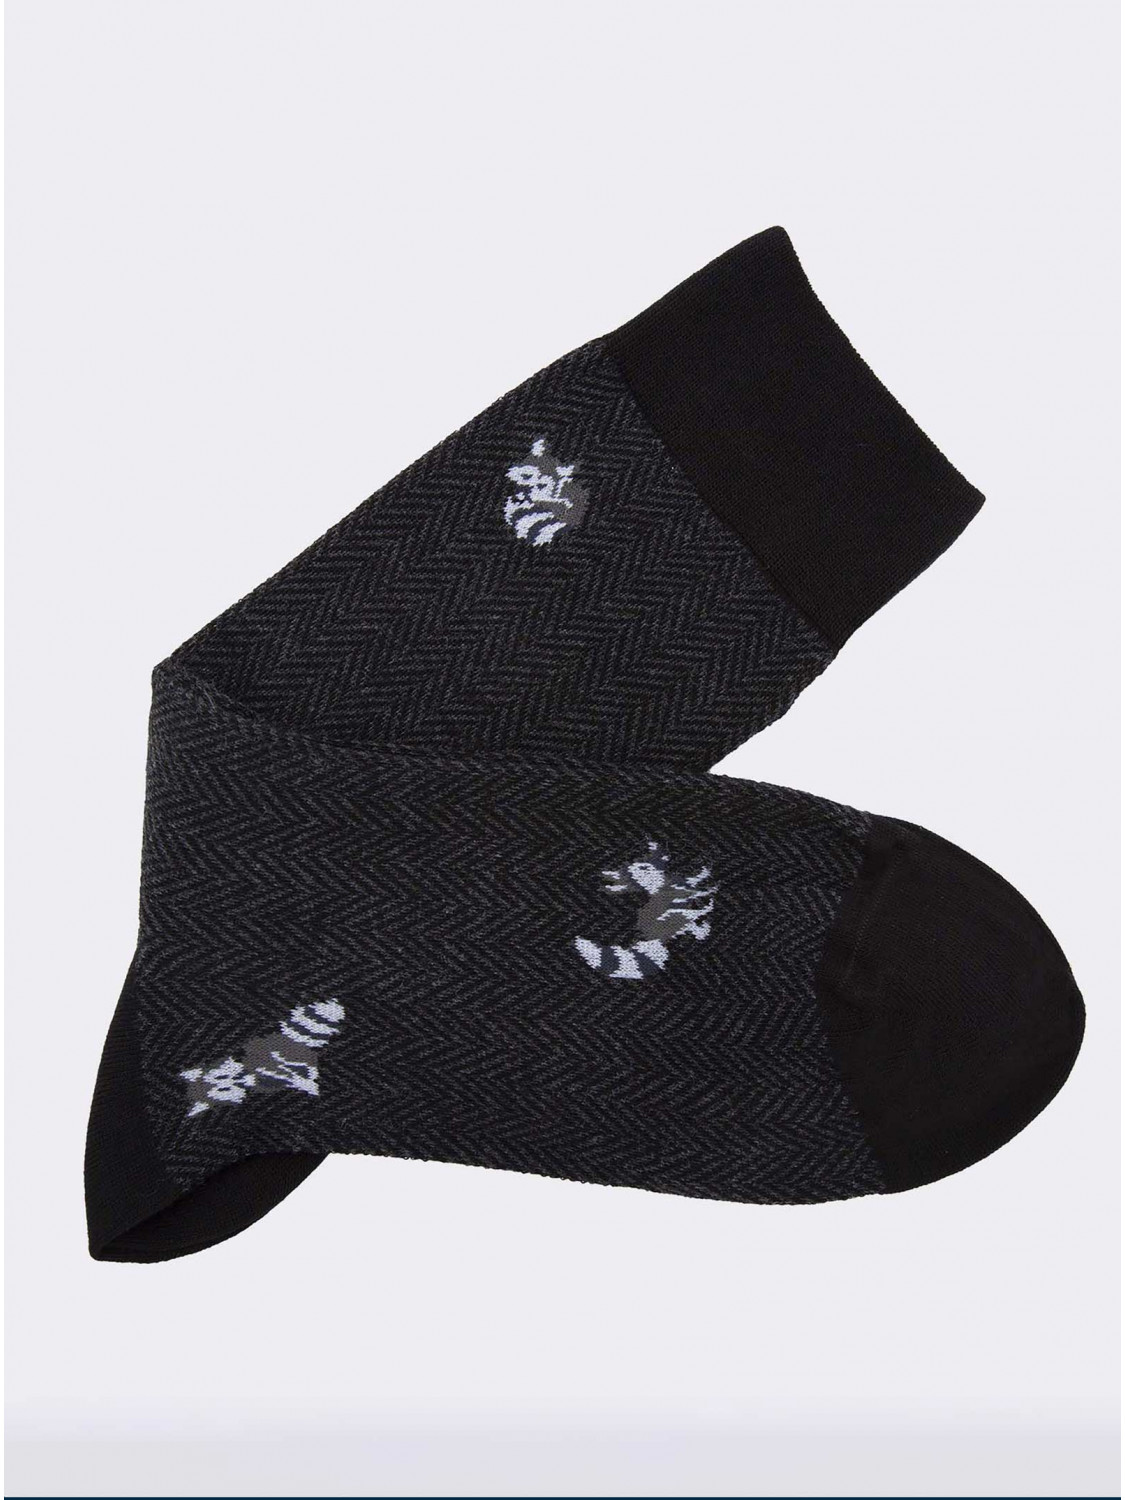 Men’s crew socks with raccoons in Warm Cotton